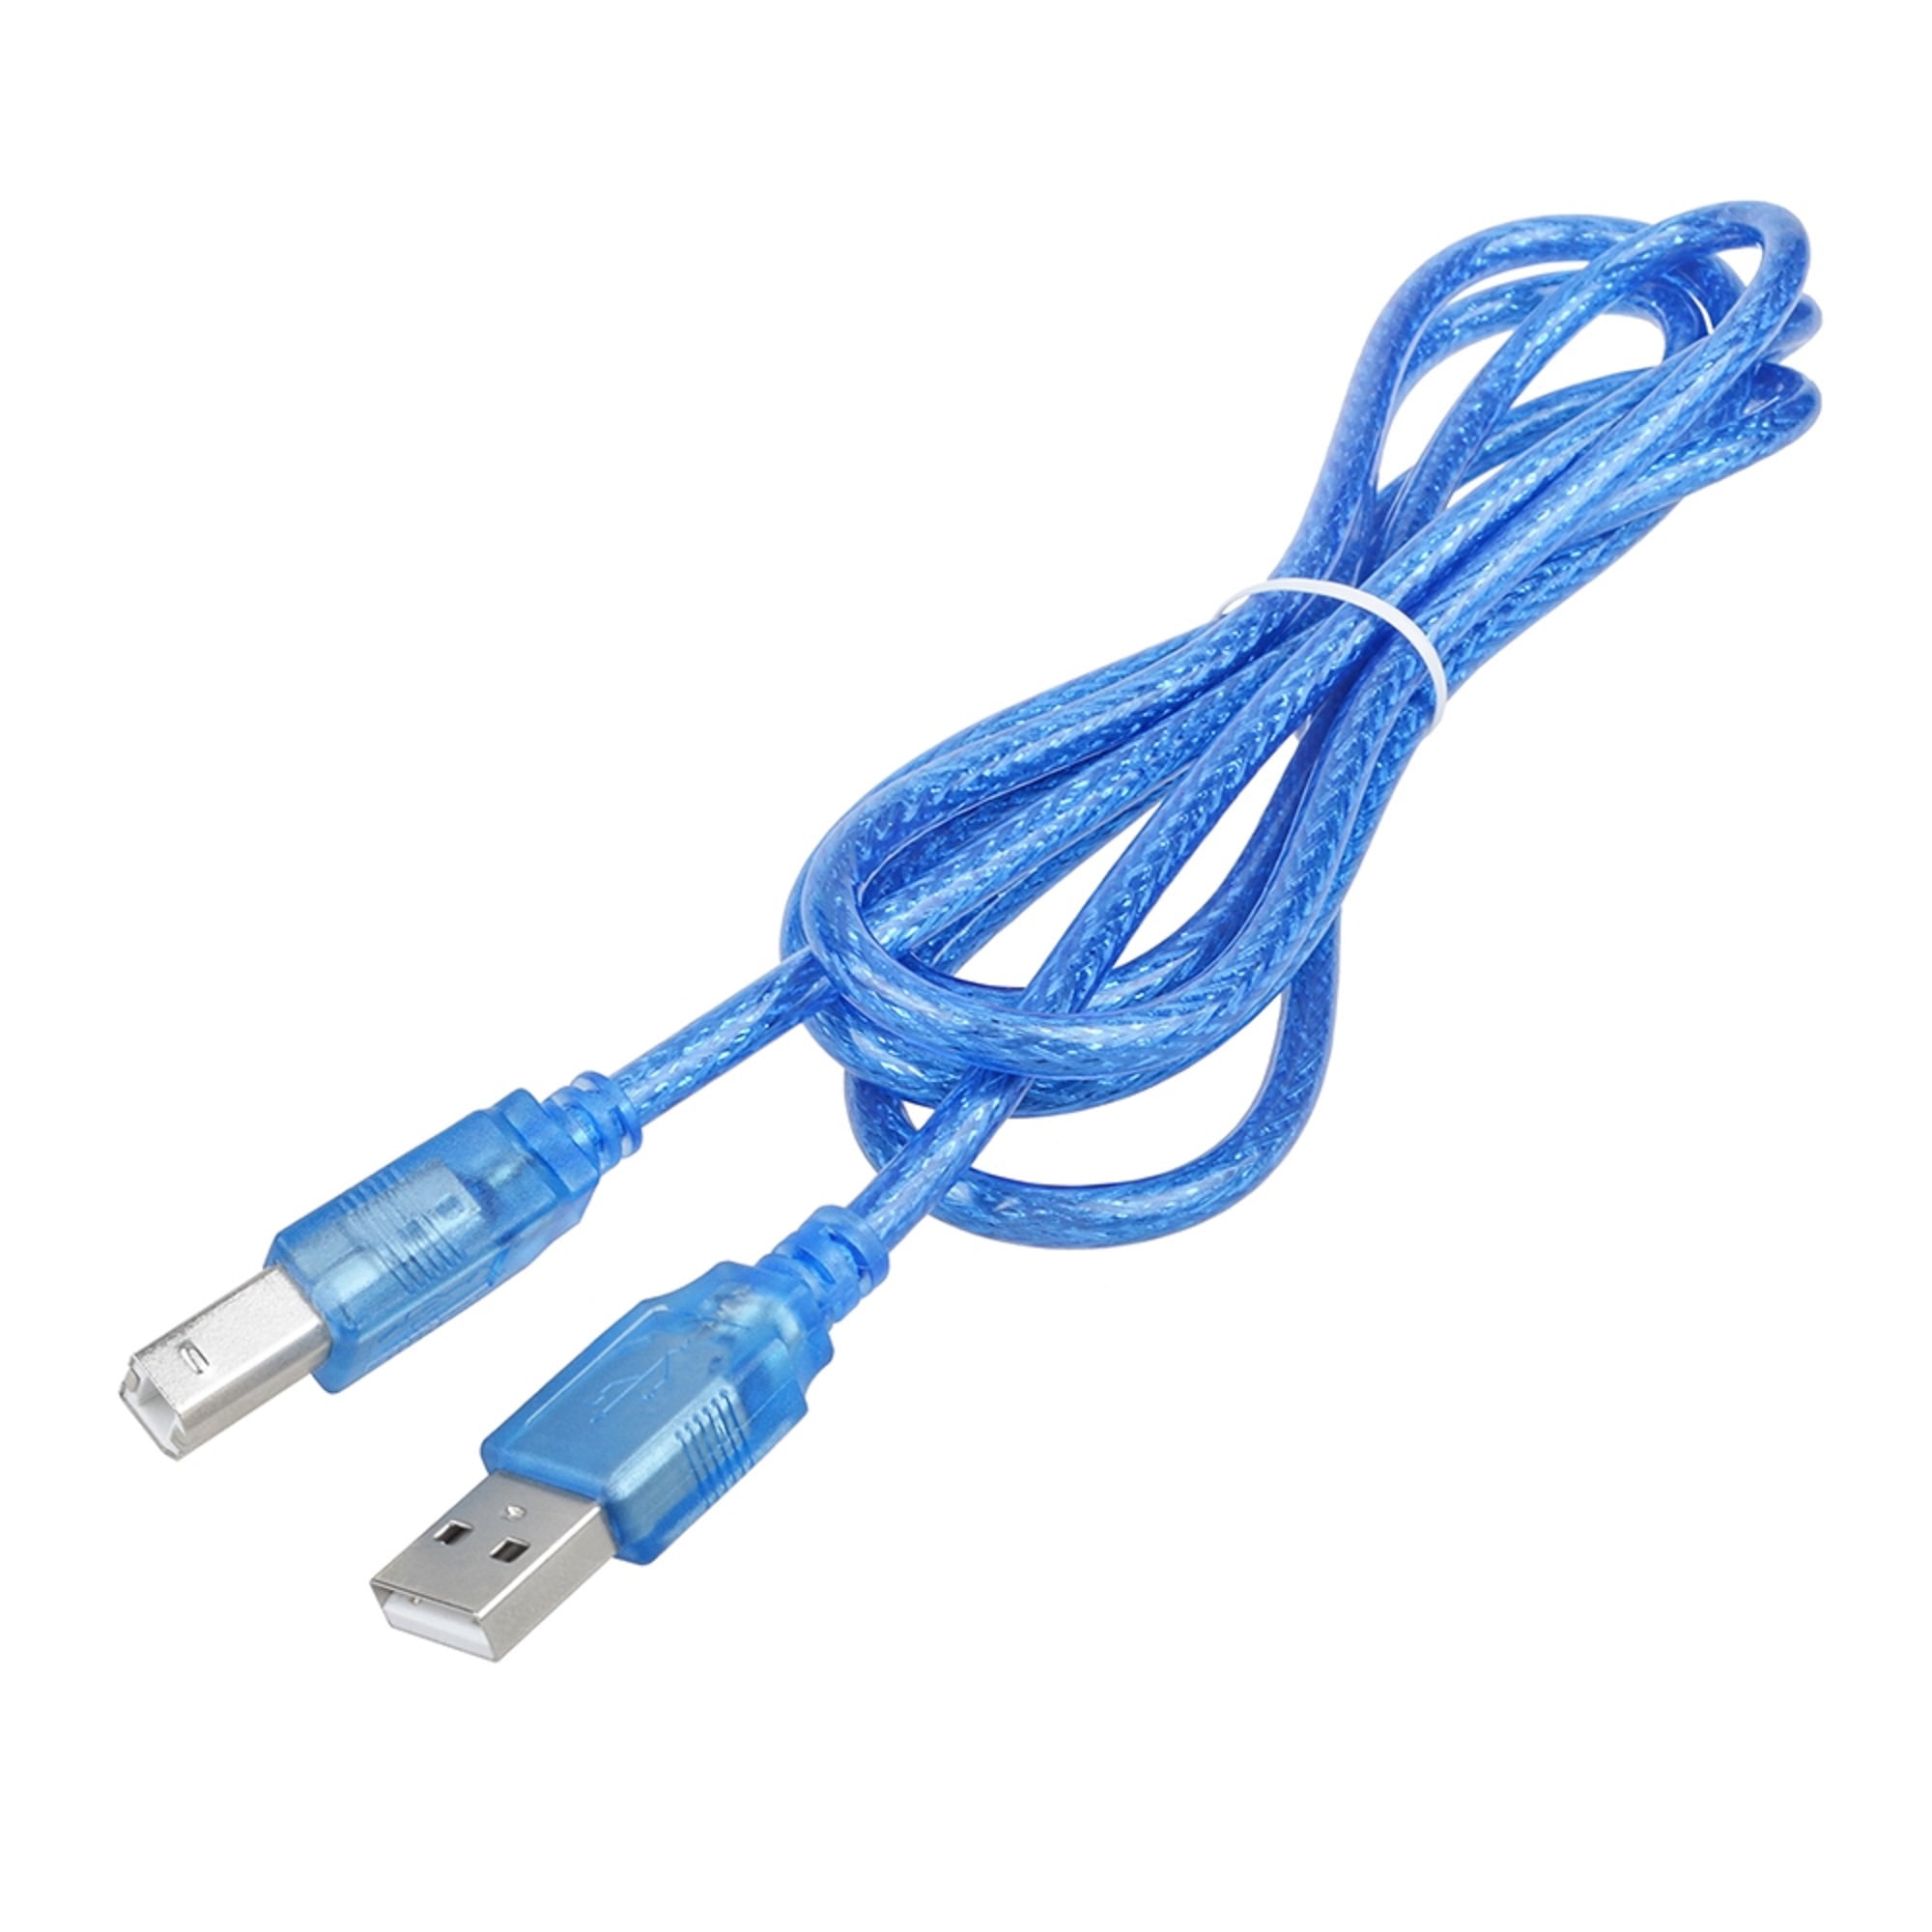 USB Cord Blue 6ft Cable for Canon PIXMA MG2220 MG2120 MG5120 MG5220 Printer 